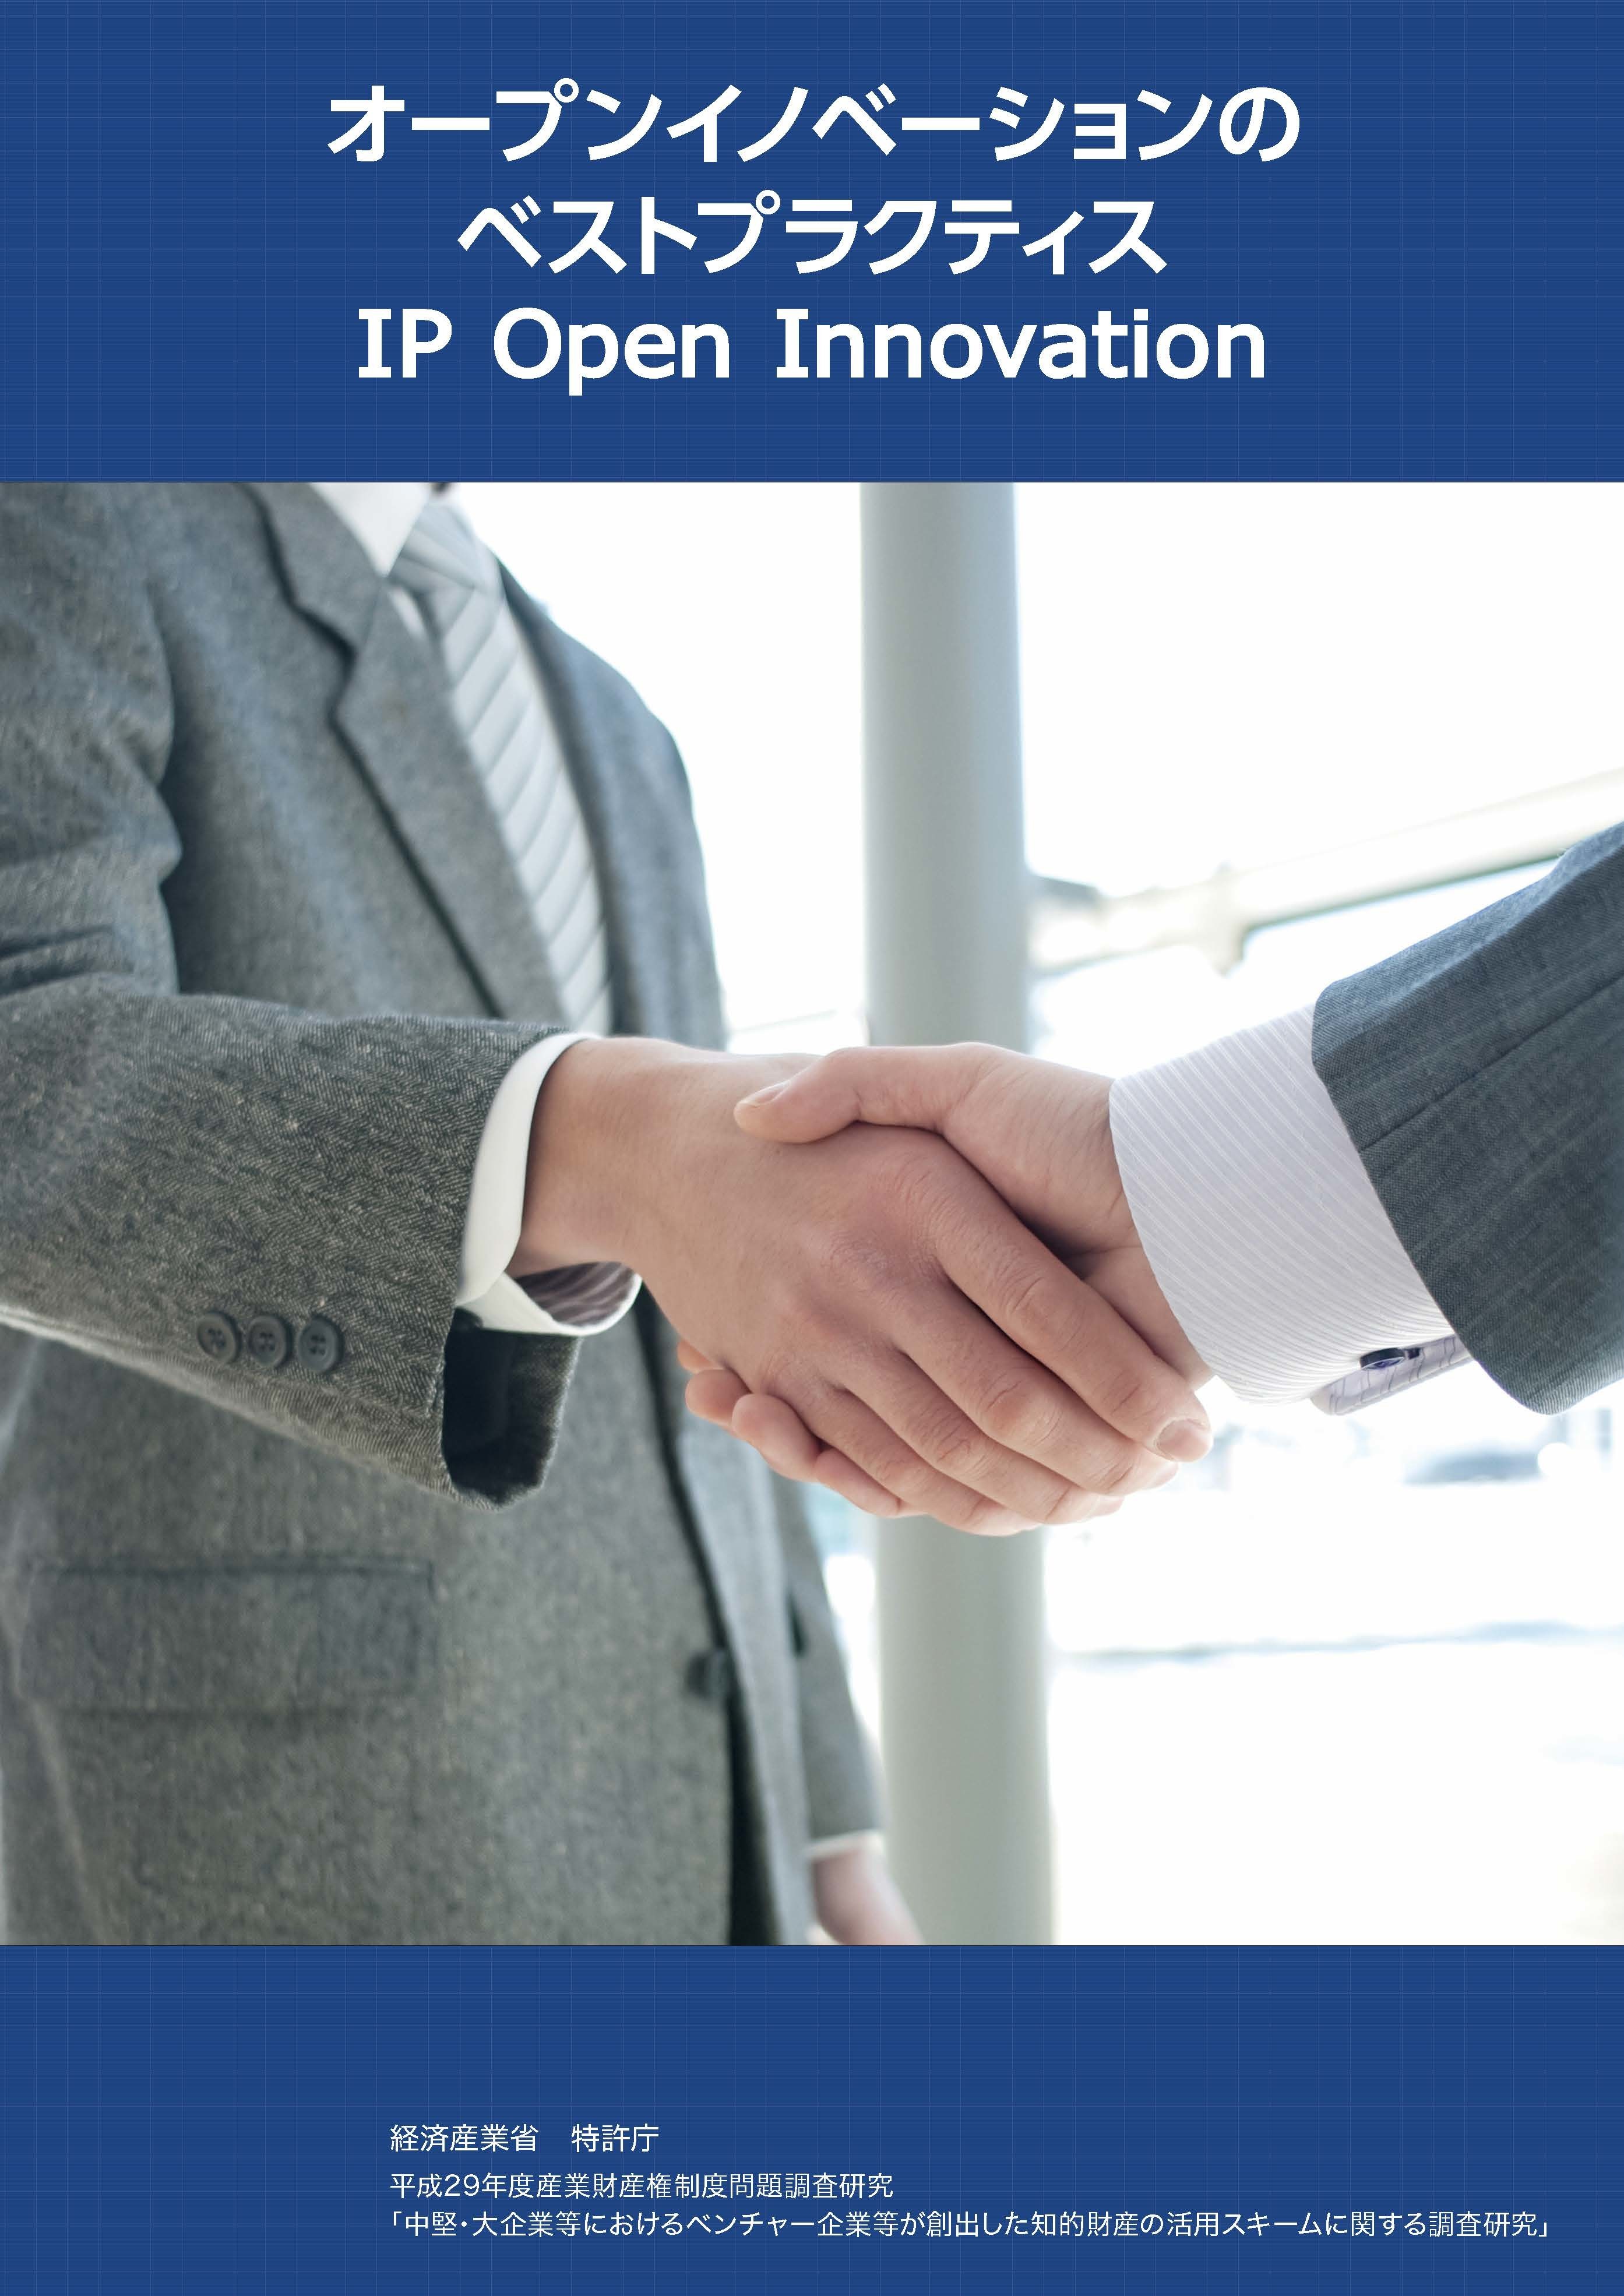 オープンイノベーションのための知財ベストプラクティス集“IP Open Innovation”